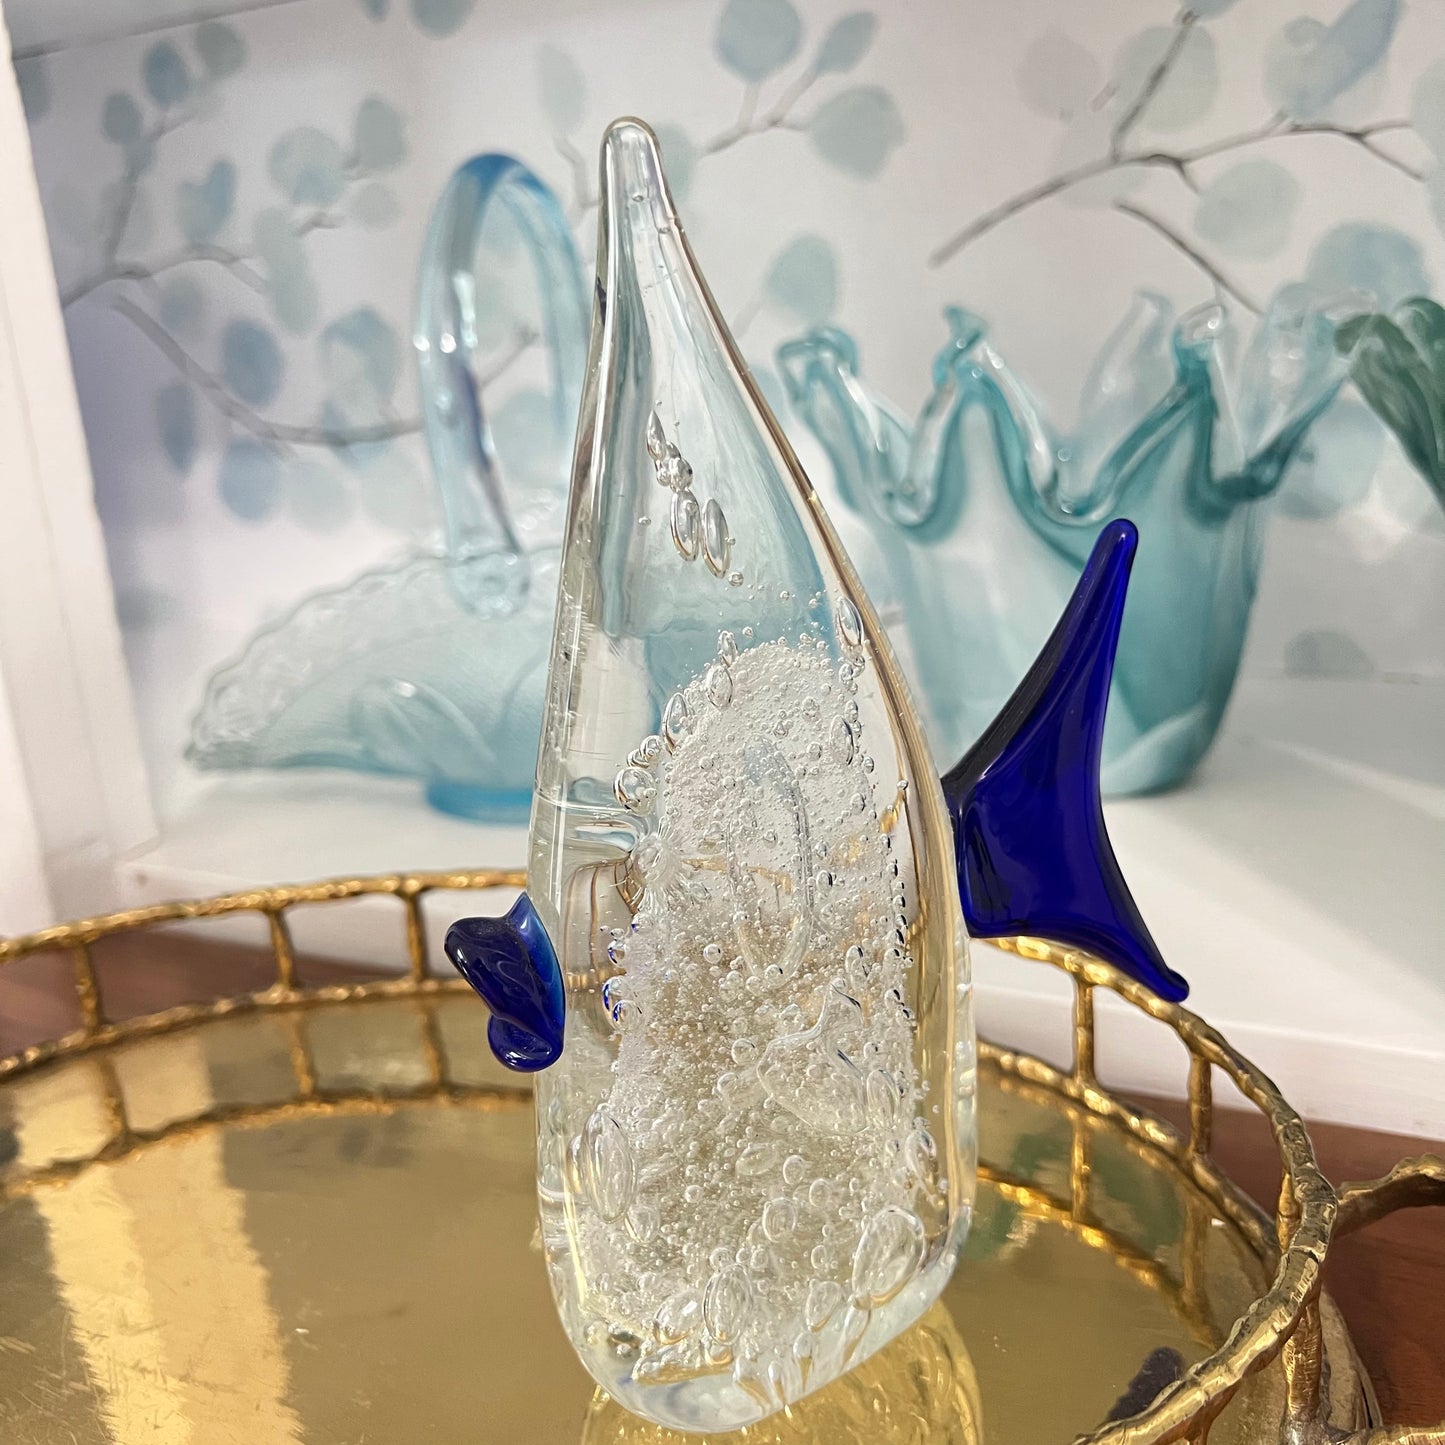 Vintage Fish Art Glass Sculpture 7.37”H